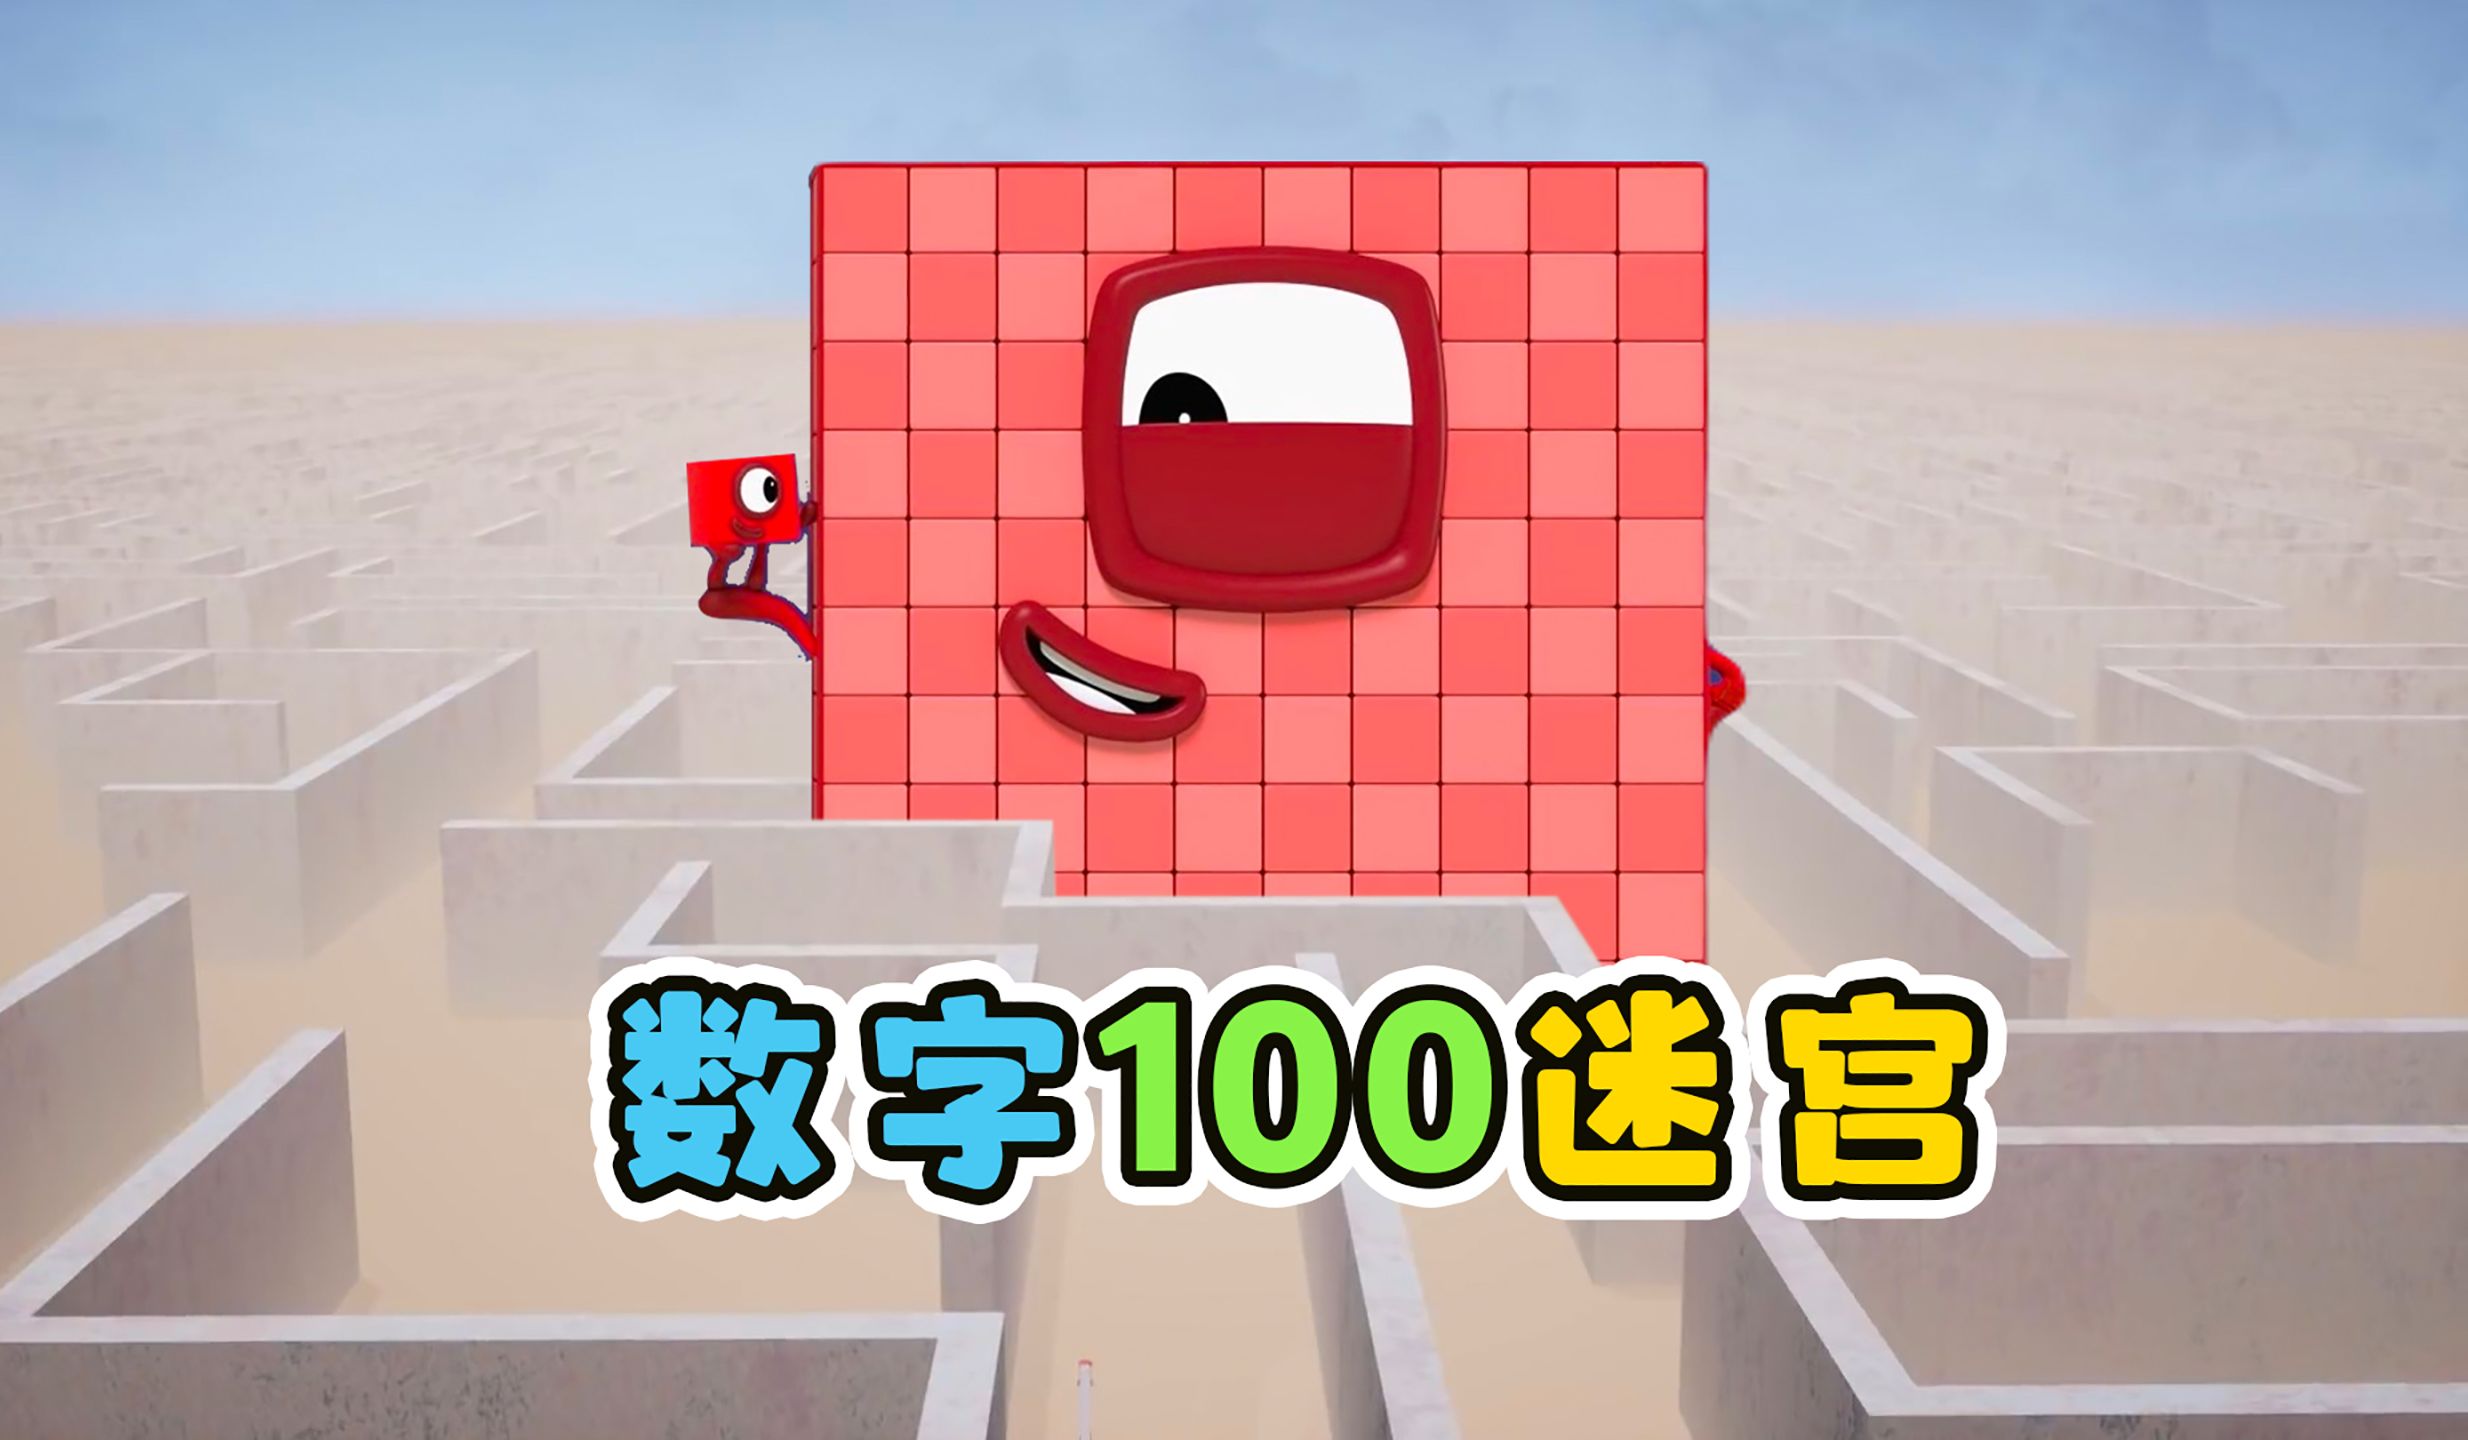 数字100进入迷宫，变成数字193。益智动画